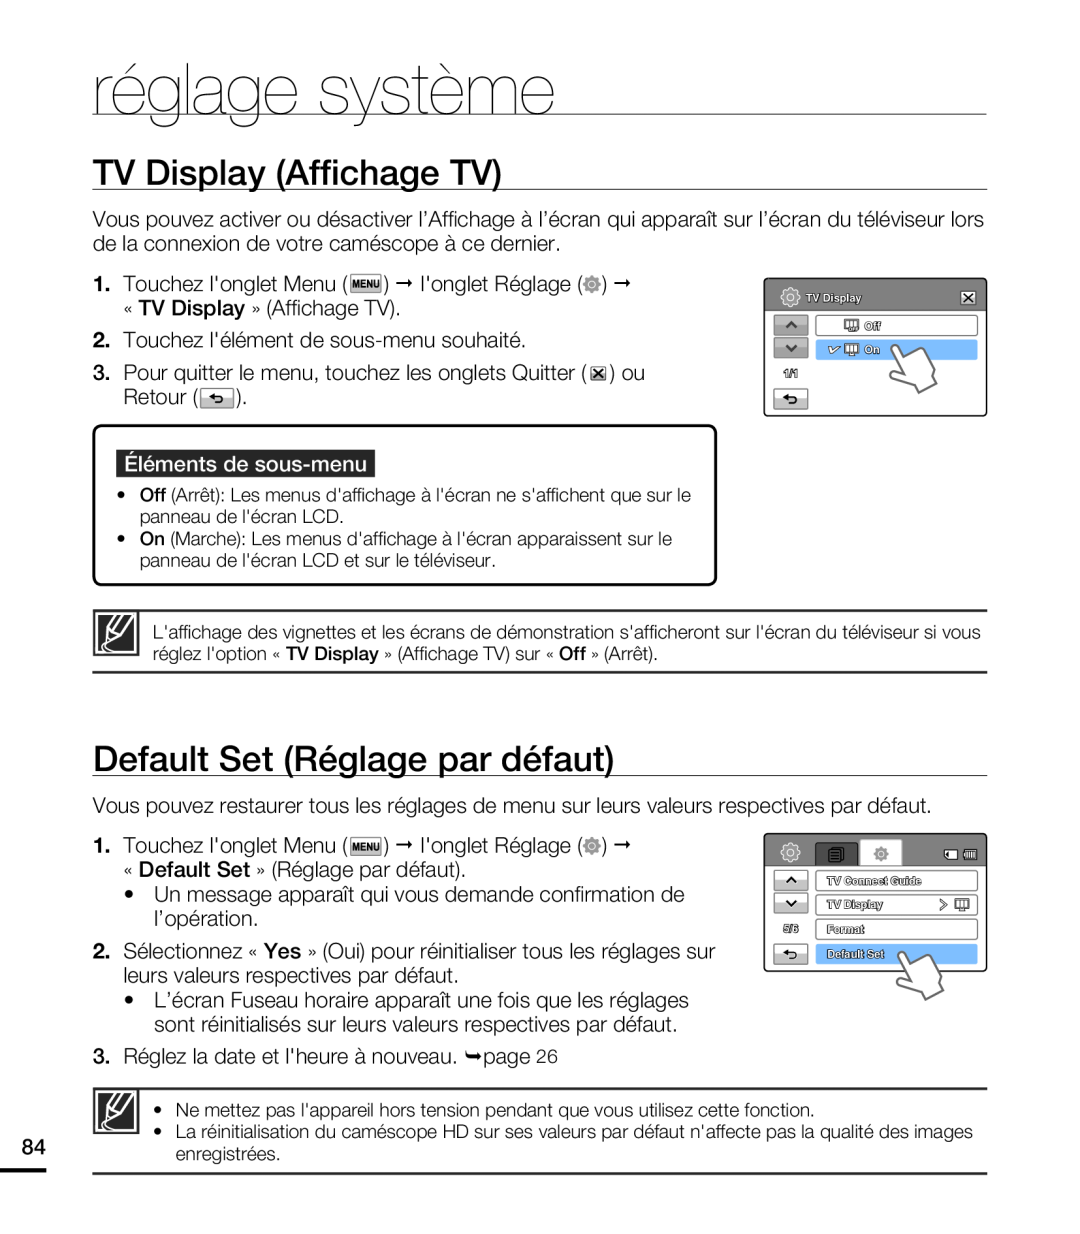 Samsung HMX-T10WP/XEU TV Display Affichage TV, Default Set Réglage par défaut, réglage système, Éléments de sous-menu 